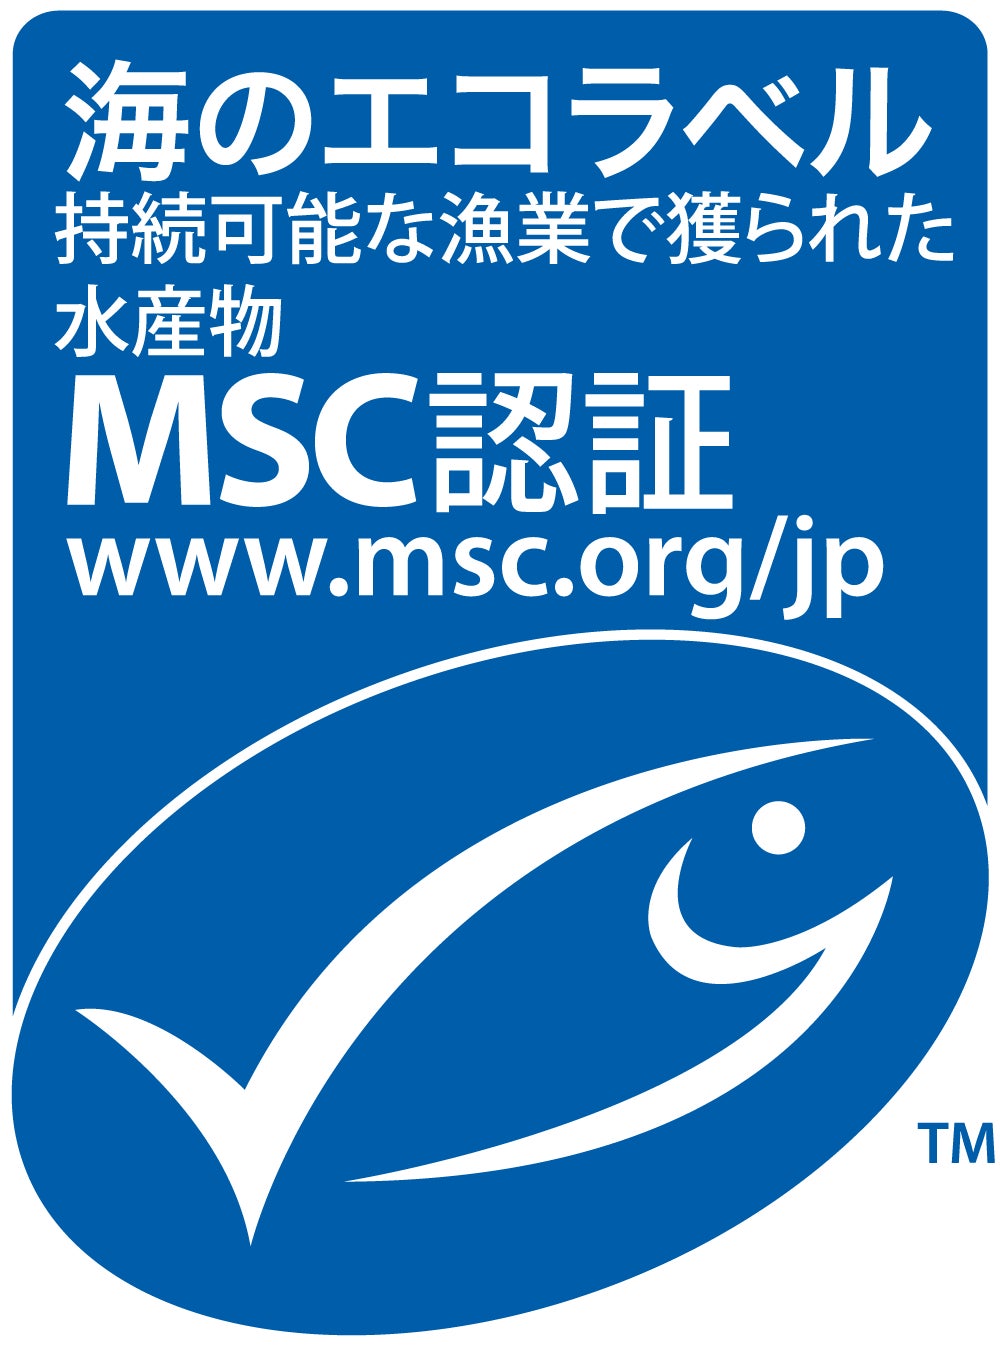 伊藤忠商事のカツオ・キハダマグロまき網漁業がMSC漁業認証を取得　　日本企業が海外の漁業について漁業認証を取得するのは初のサブ画像1